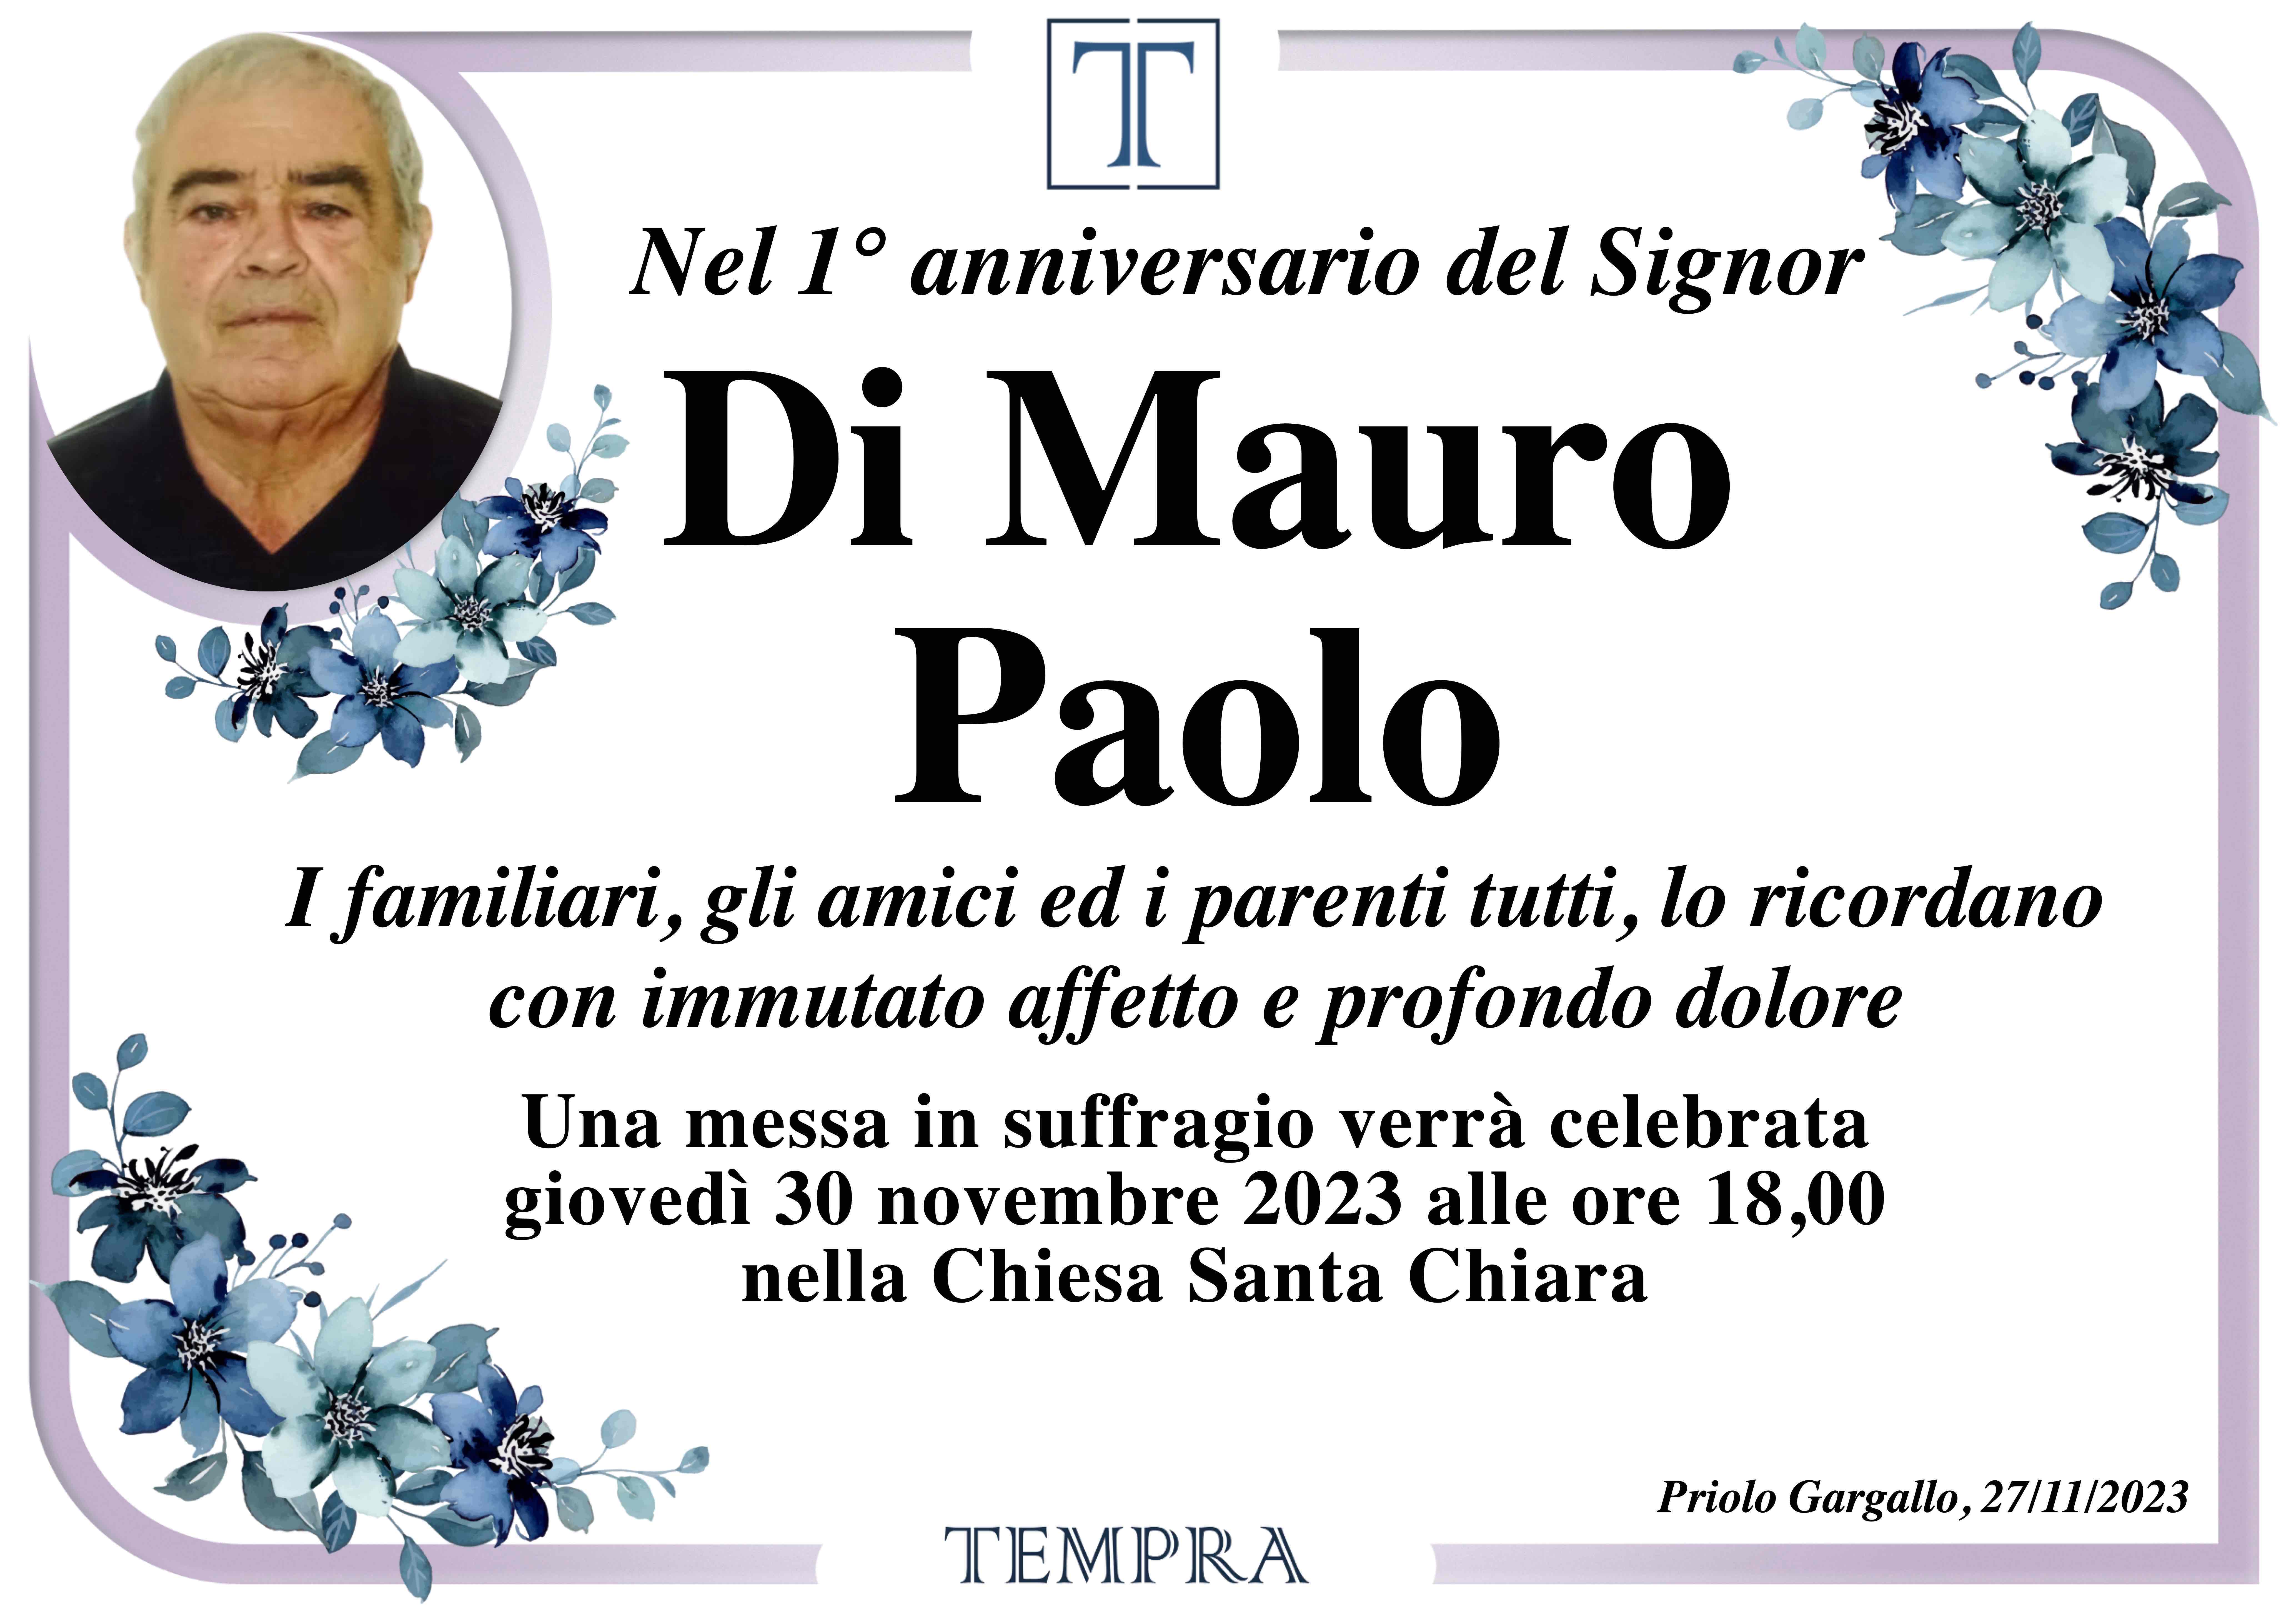 Paolo Di Mauro